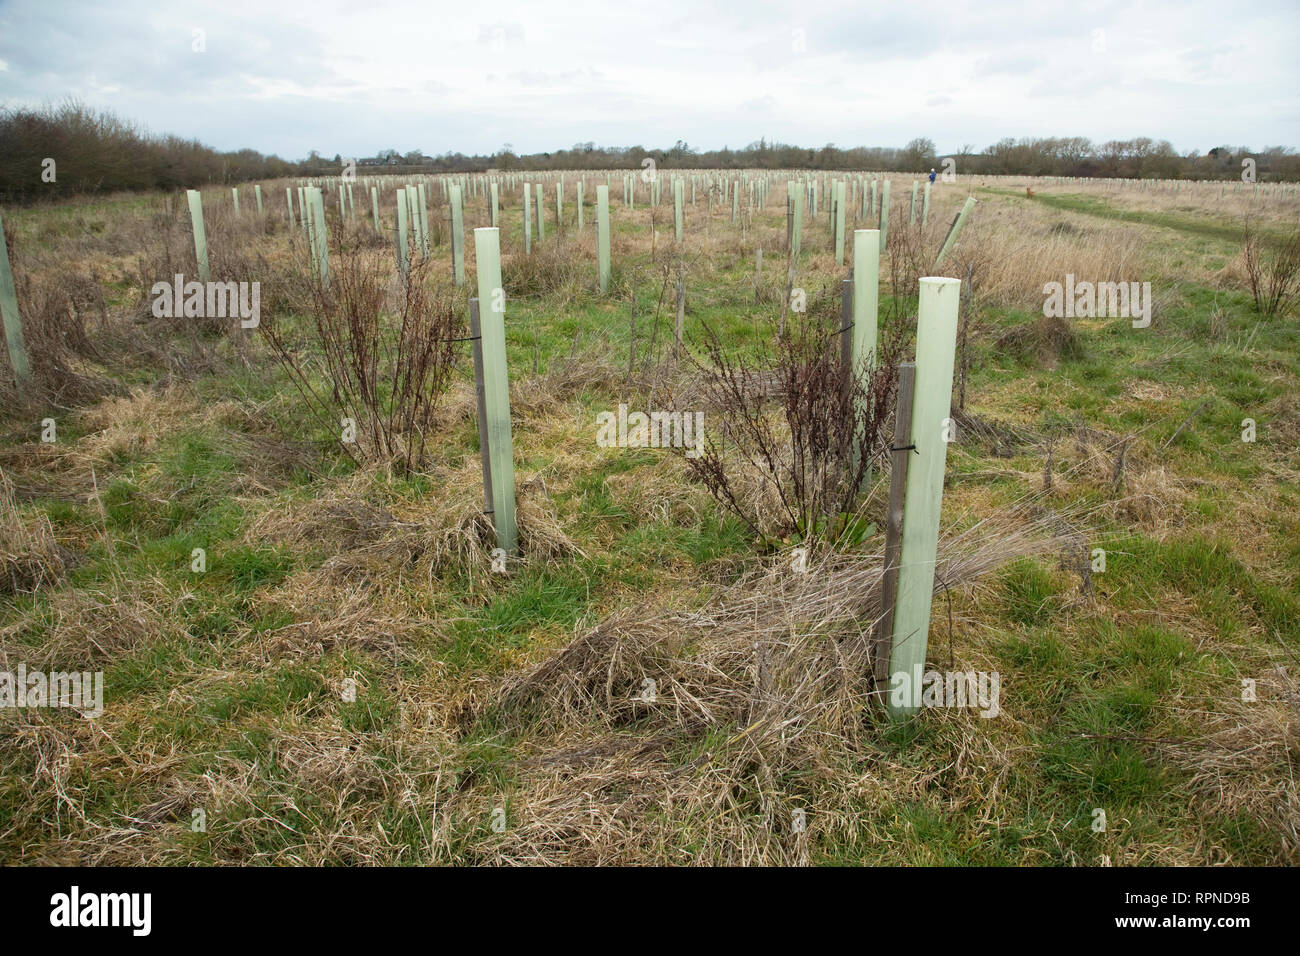 Les arbres nouvellement plantés avec des gardes dans le coeur de l'Angleterre, de la forêt, dans le Warwickshire, Royaume-Uni Dorsington Banque D'Images